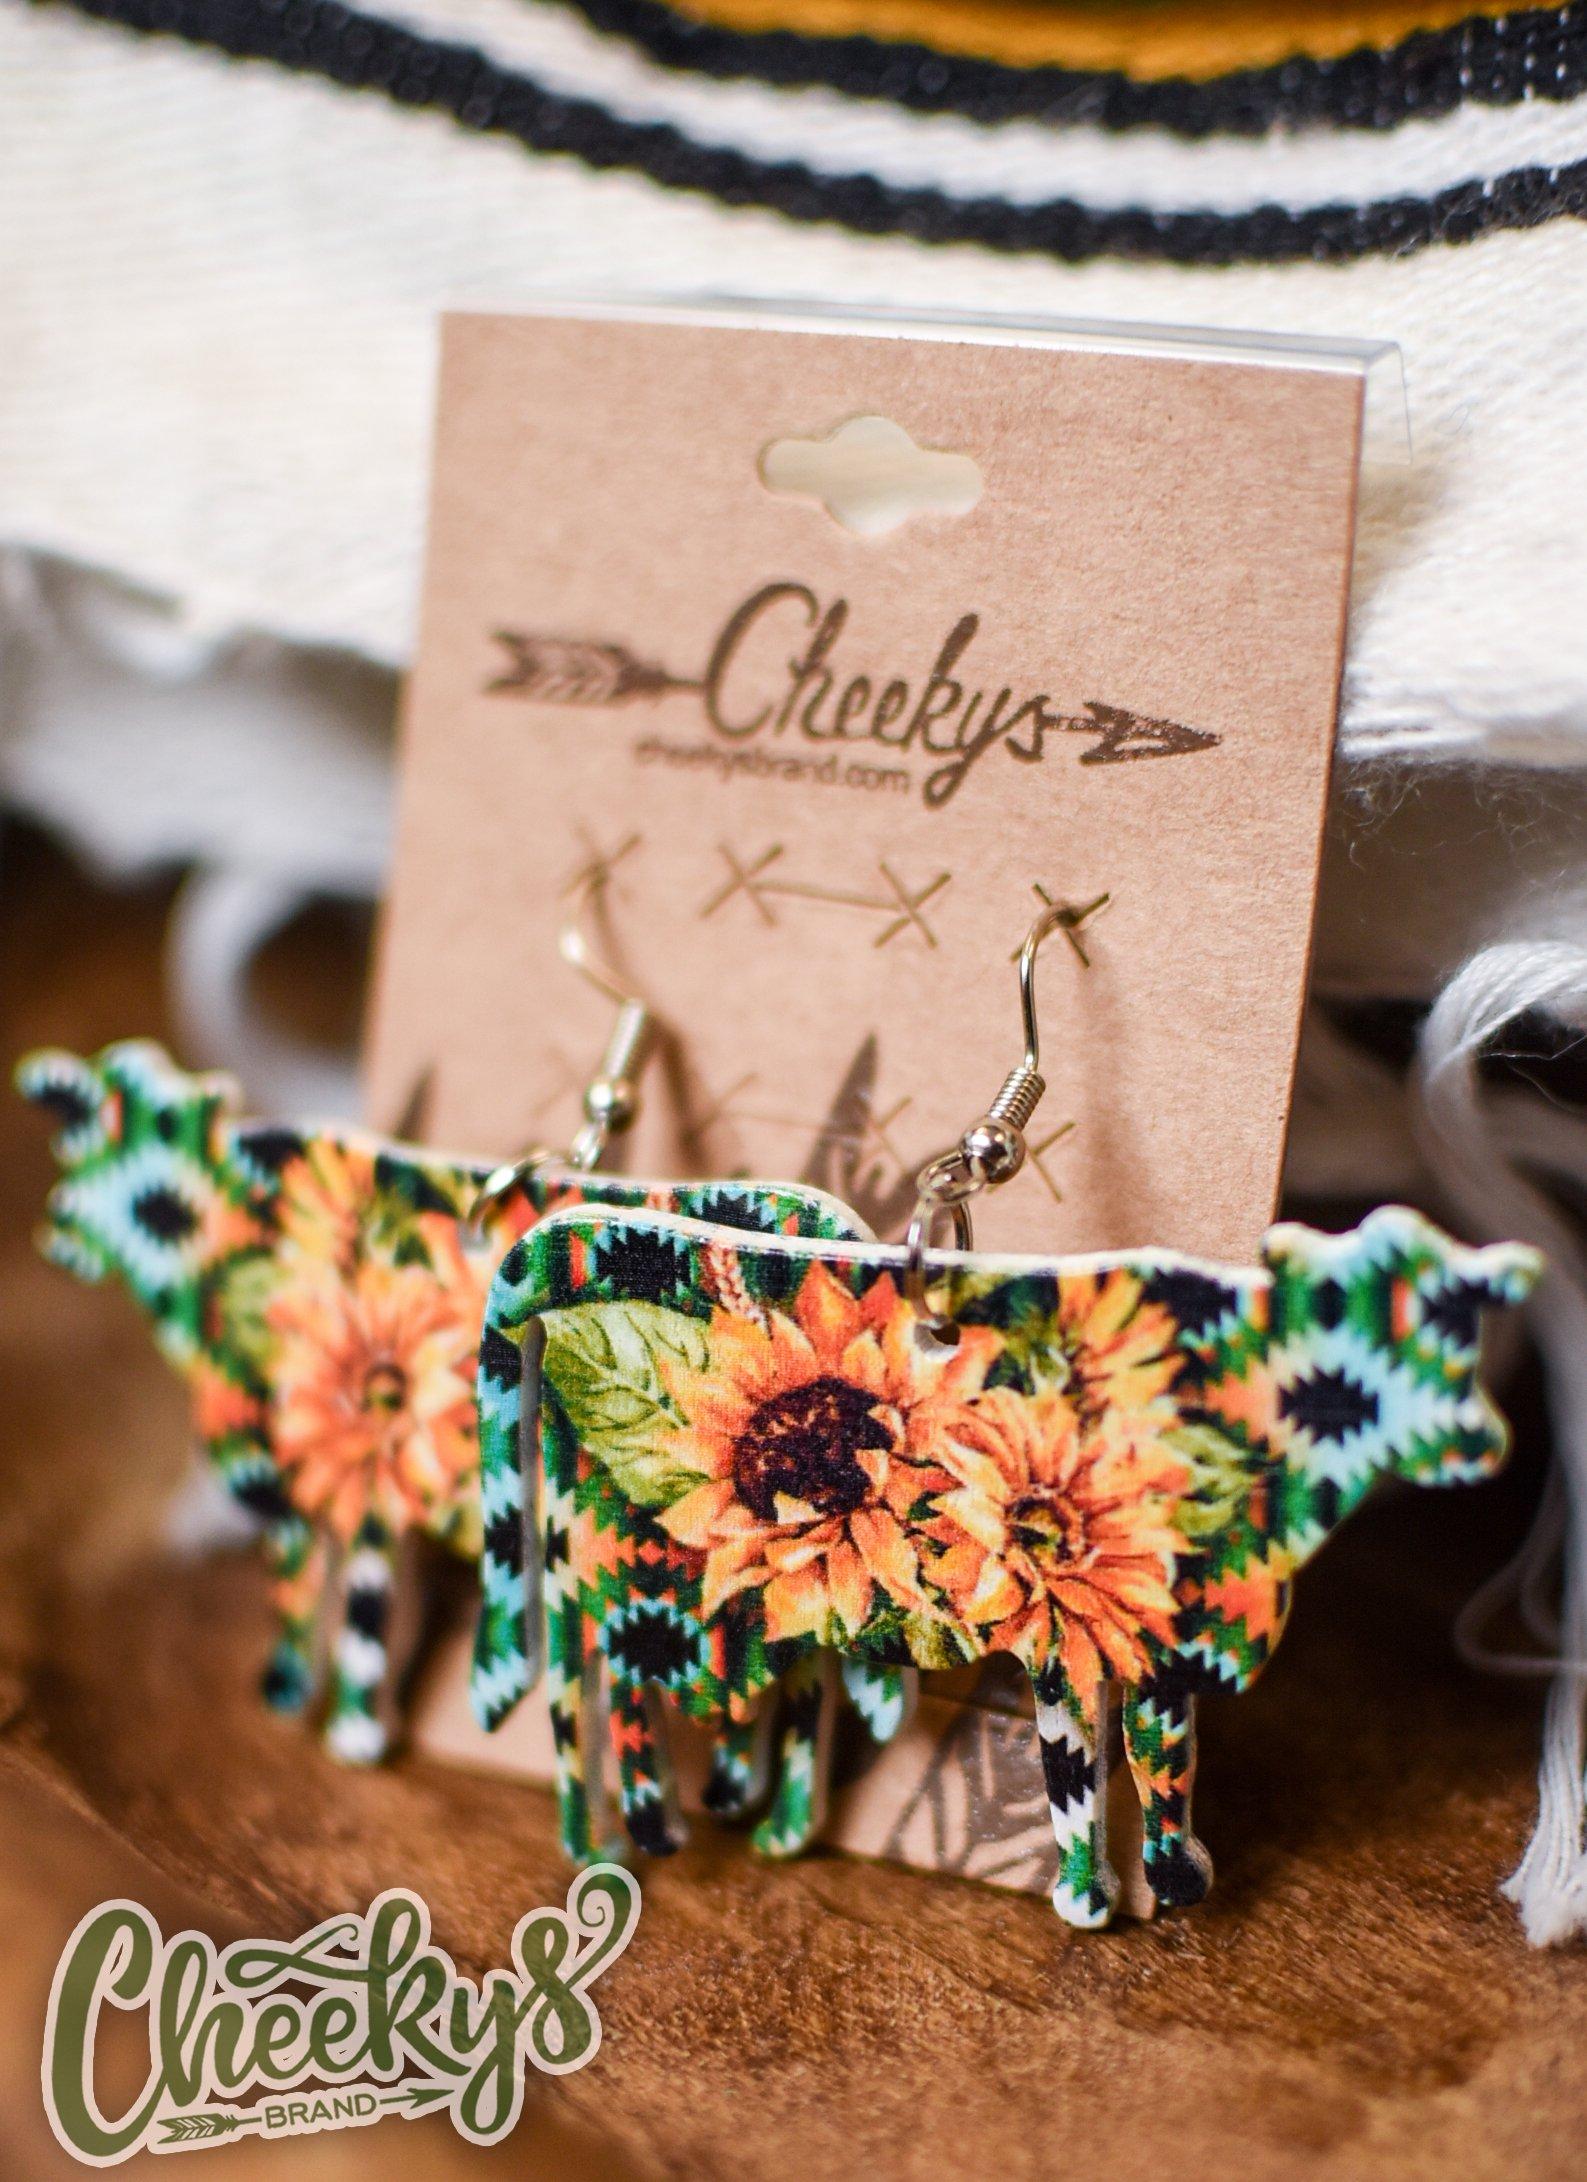 Maybelle Aztec Sunflower Cow Earrings Jewelry 18 